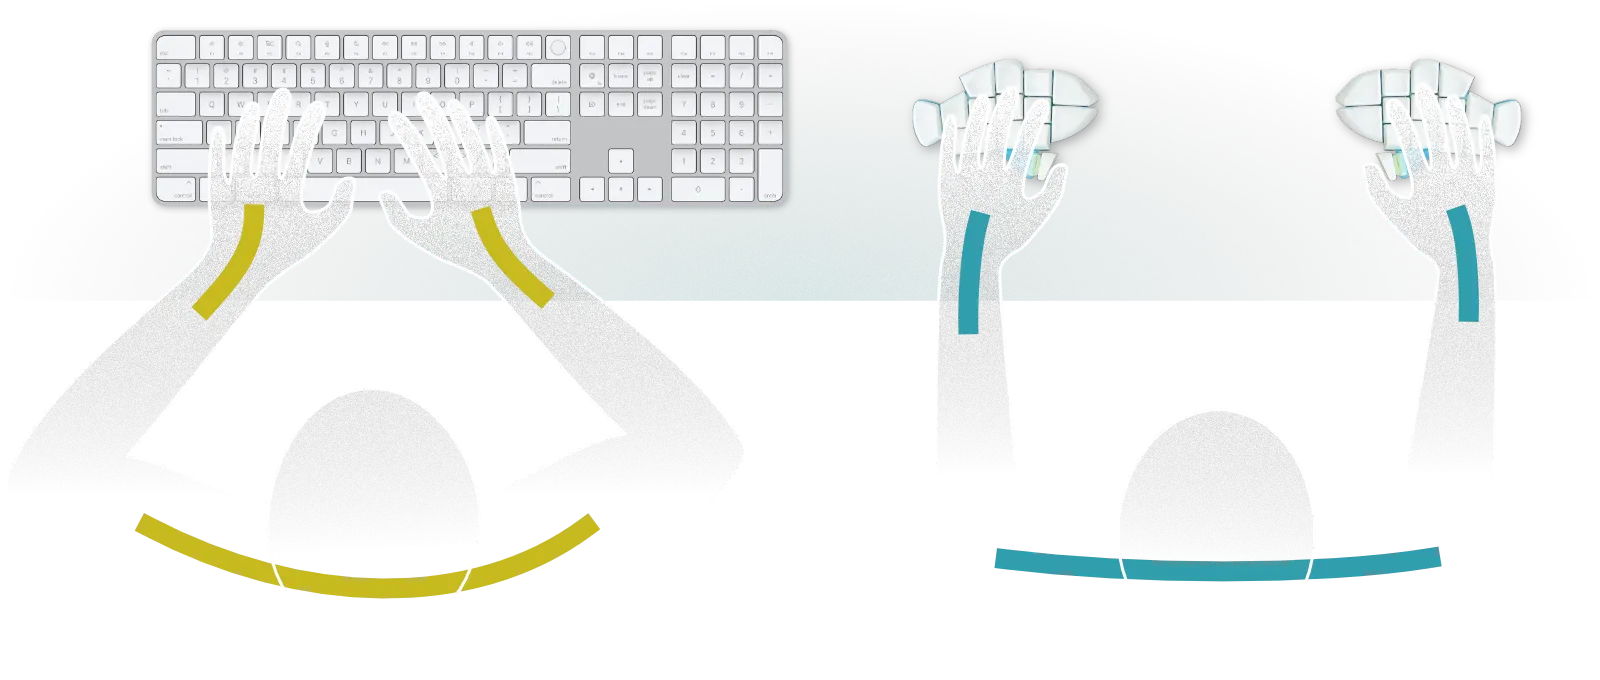 普通のキーボードとおさかなキーボードを打つときの姿勢の比較CG